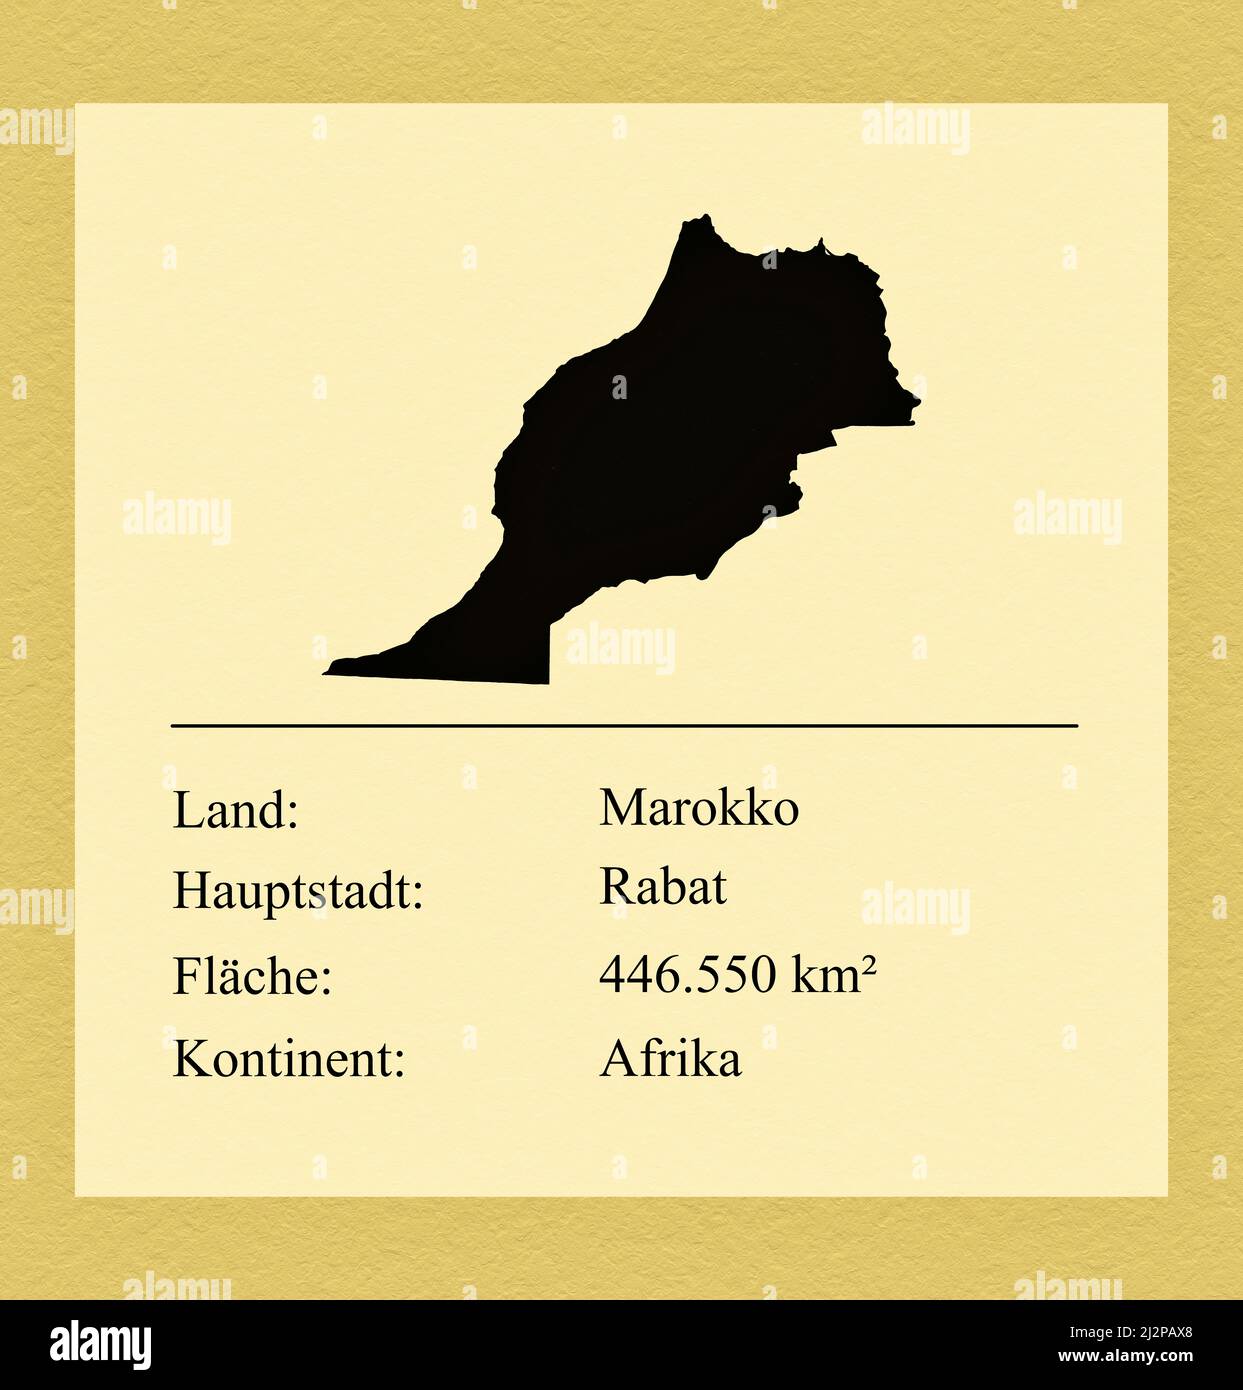 Umrisse des Landes Marokko, darunter ein kleiner Steckbrief mit Ländernamen, Hauptstadt, Fläche und Kontinent Foto de stock